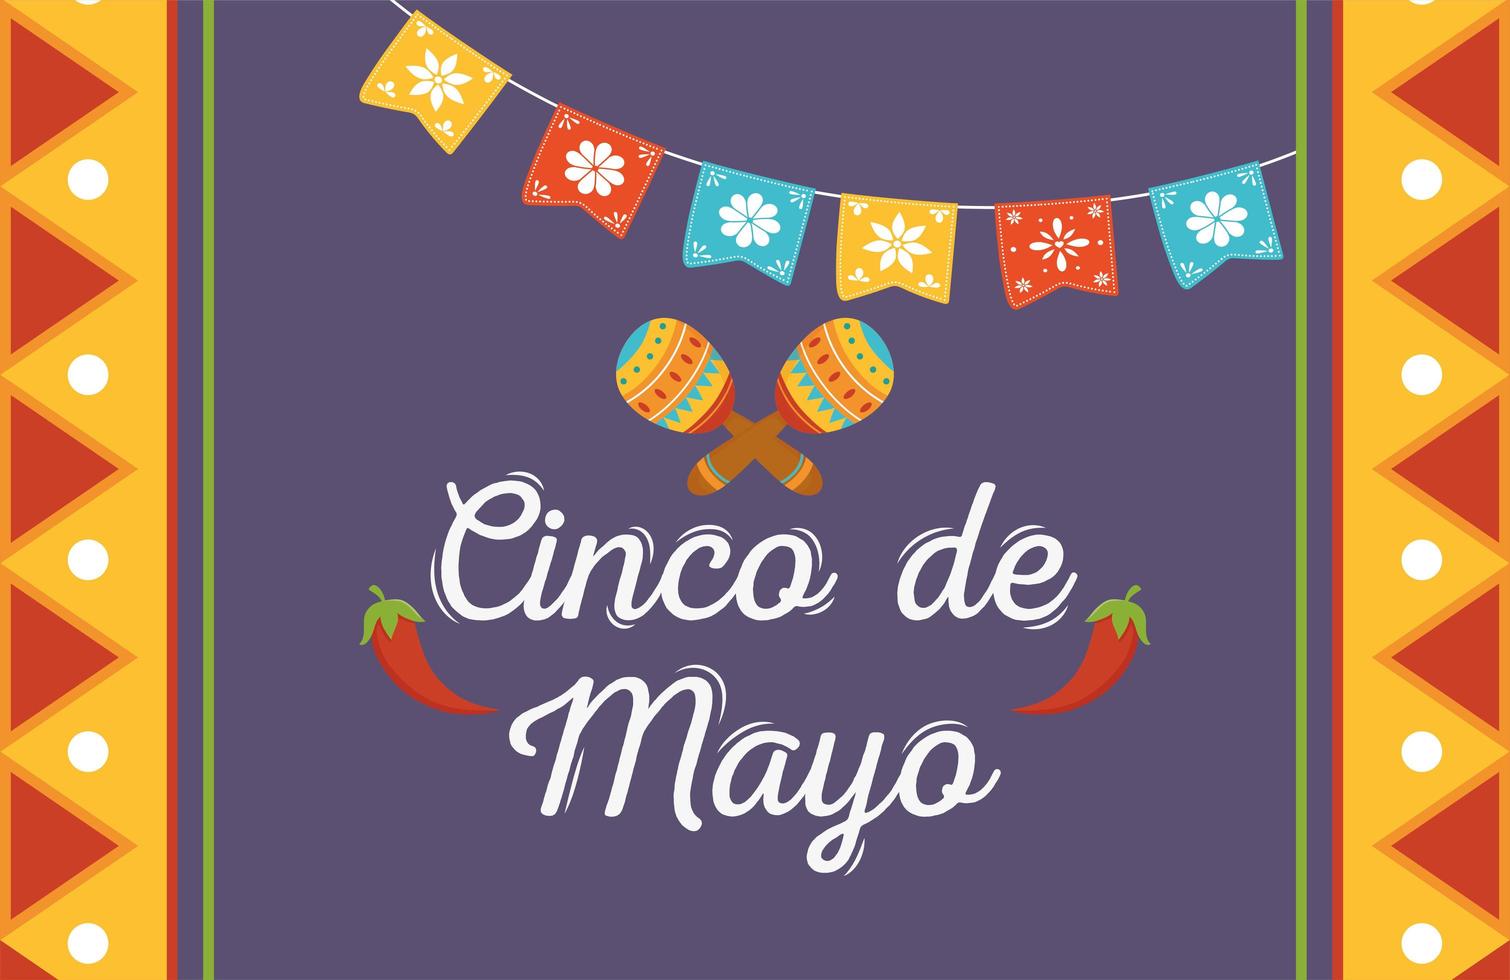 mexikanische elemente für cinco de mayo feierbanner vektor